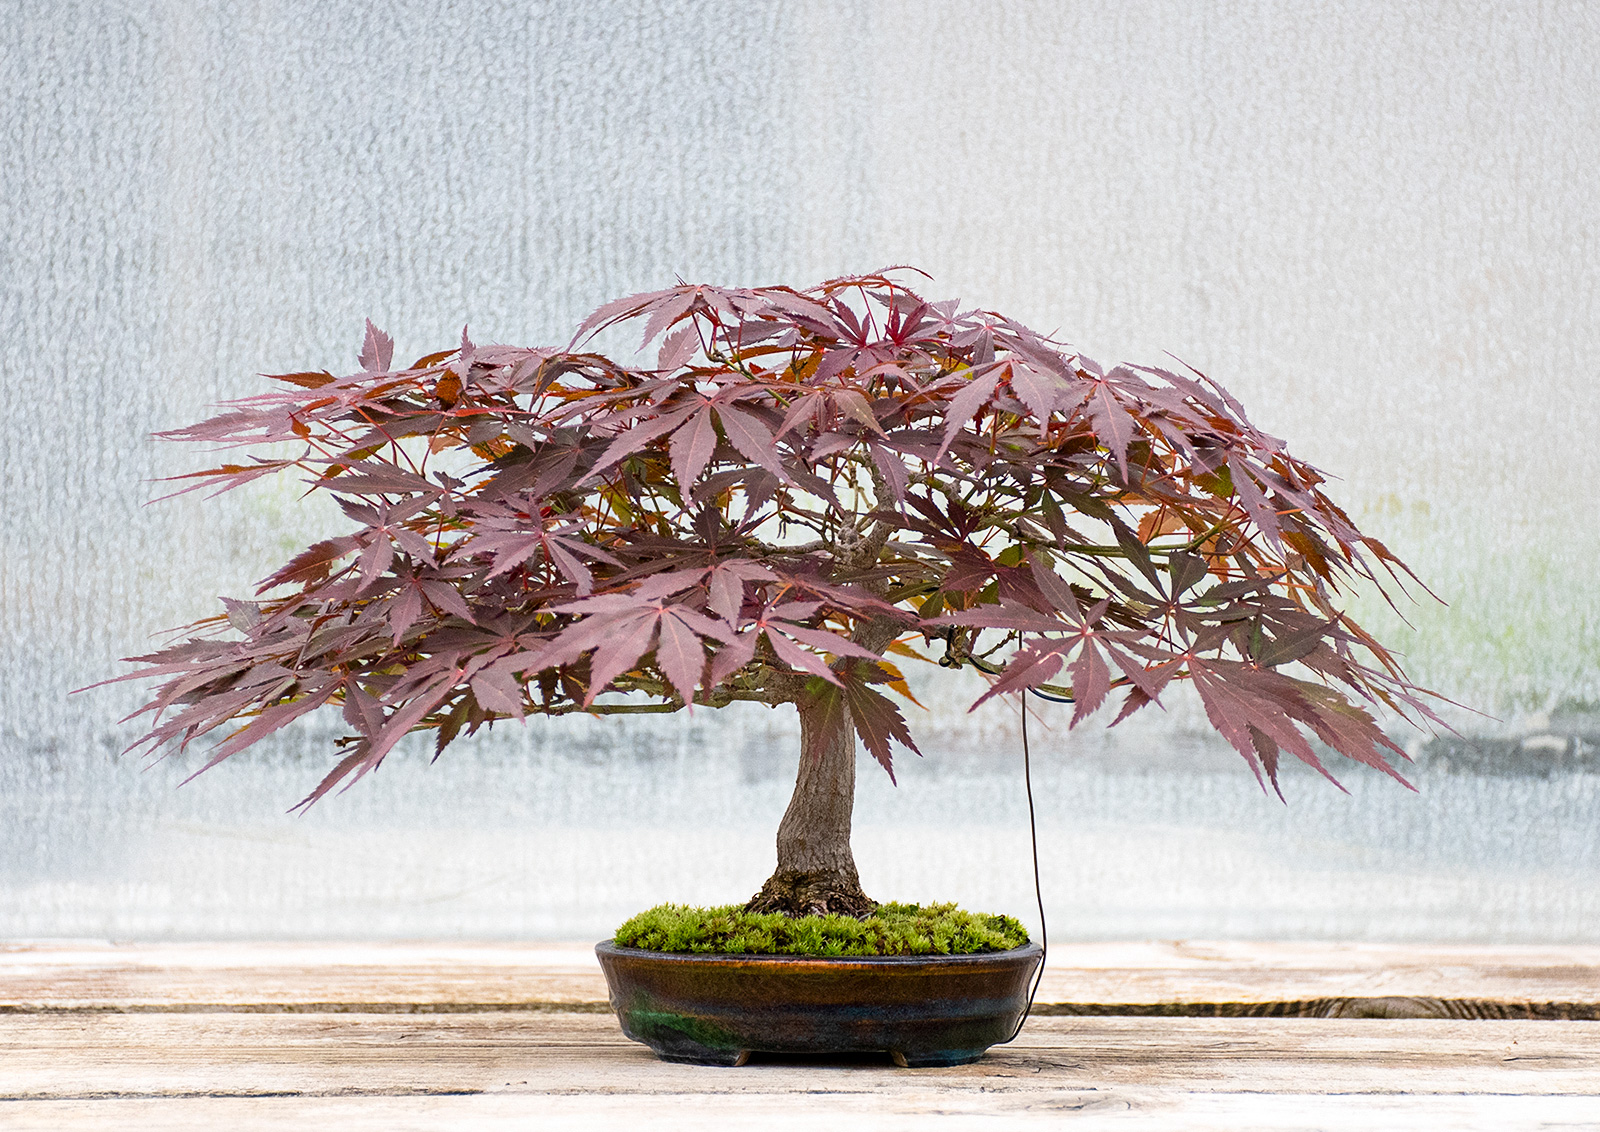 ベニカガミ-G1（べにかがみ・紅鏡）雑木盆栽の販売と育て方・作り方・Acer palmatum var.amoenum bonsai